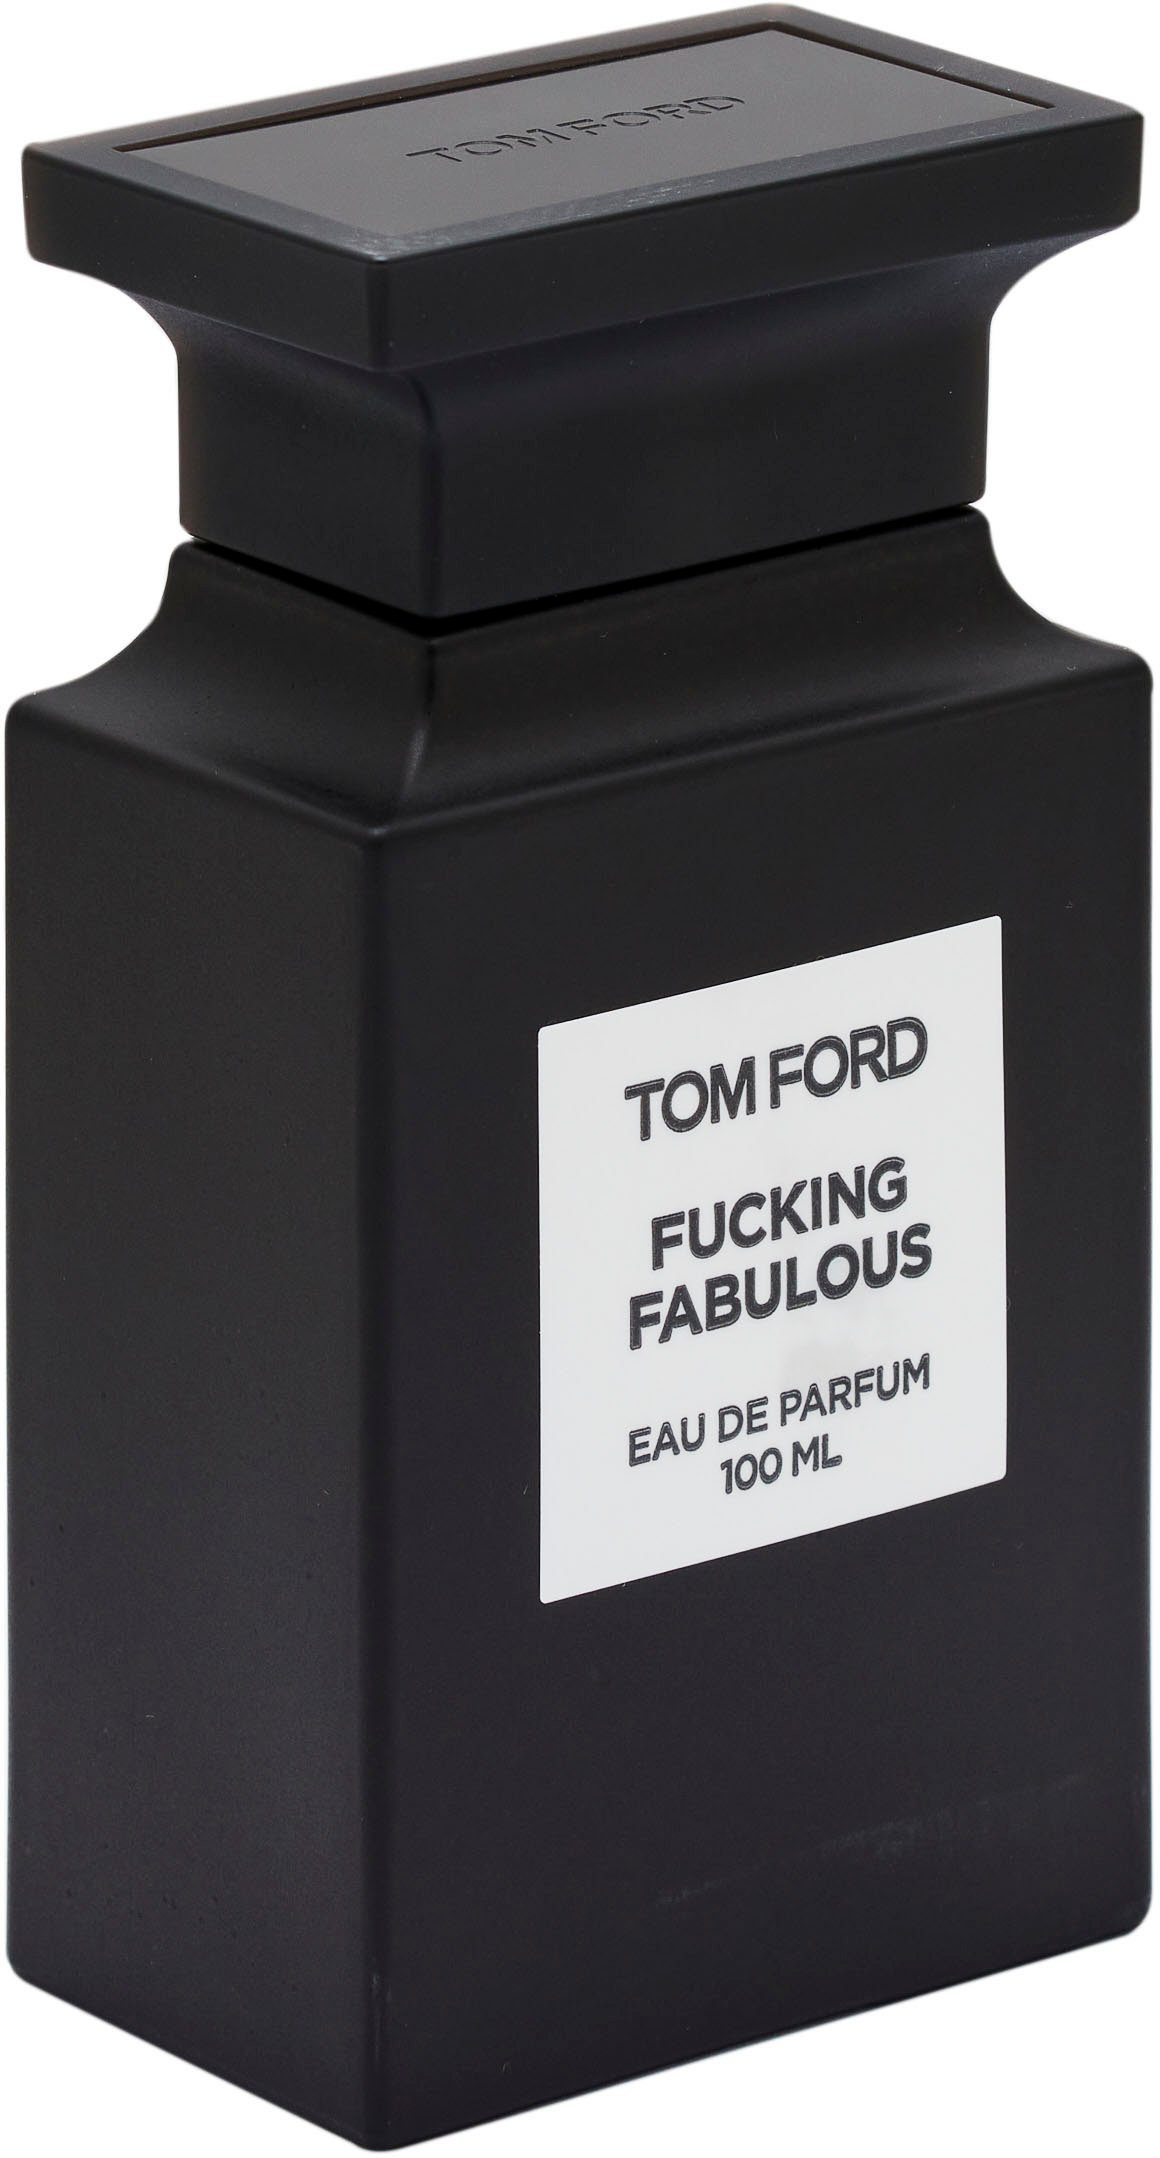 Tom Ford Eau de Parfum Fucking Fabulous